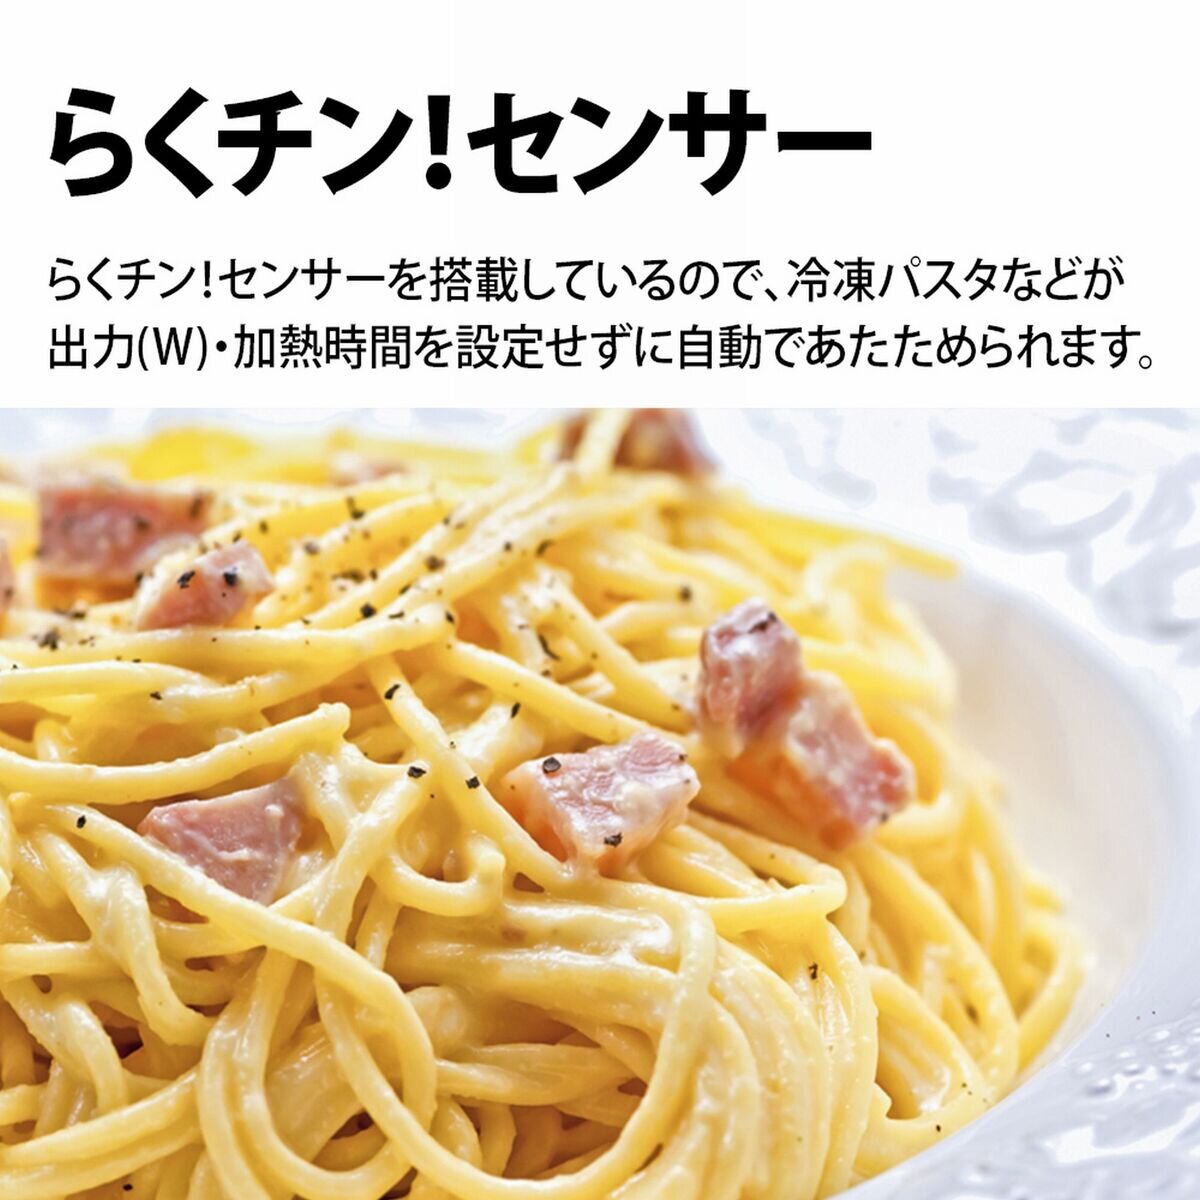 シャープ コンベクションオーブンレンジ RE-S1100-W | Costco Japan